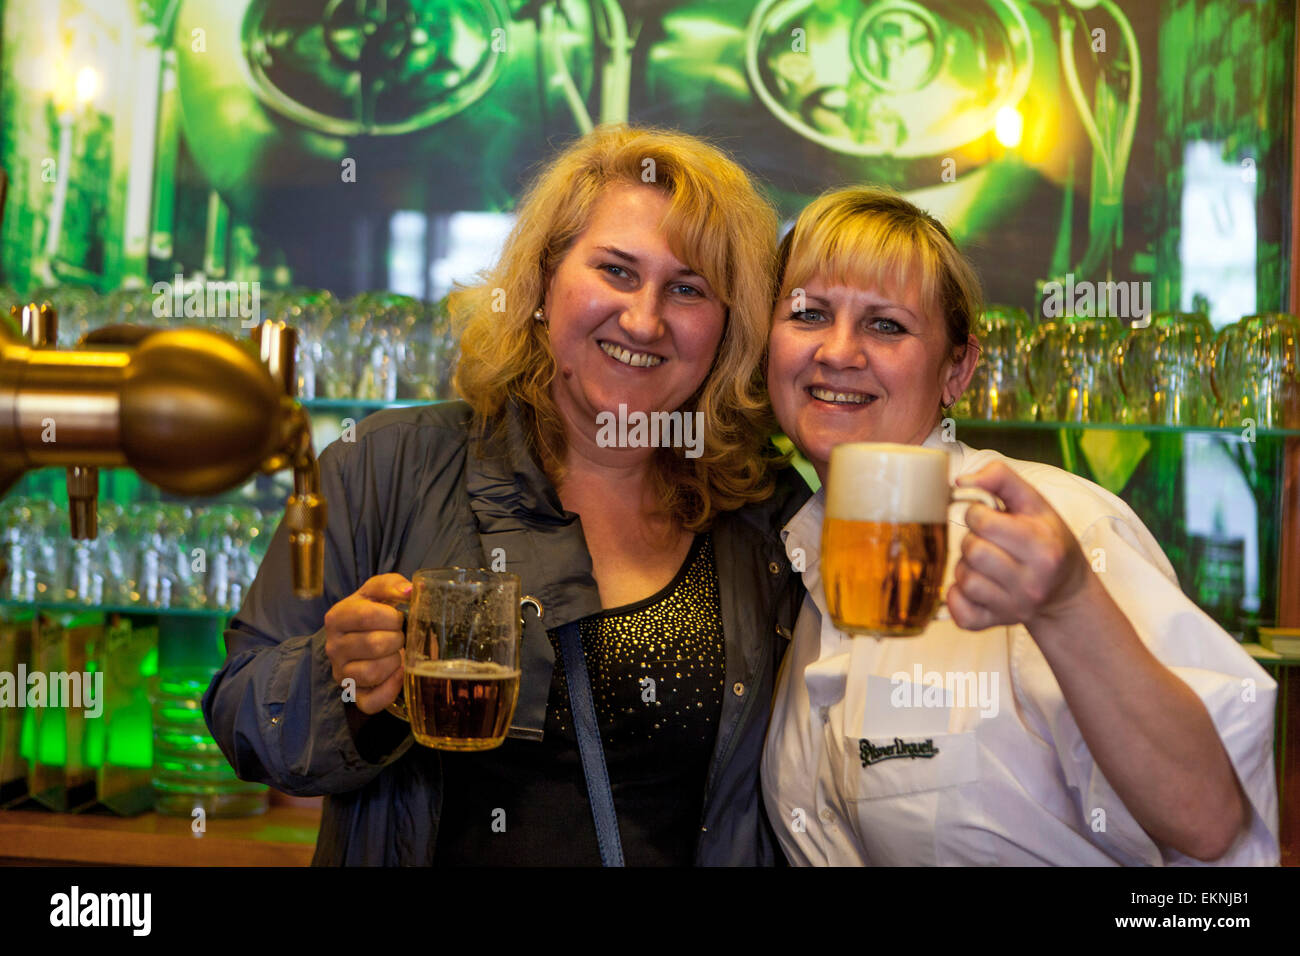 Two Women with a pint of Pilsner beer, Prague bar Czech Republic Stock Photo